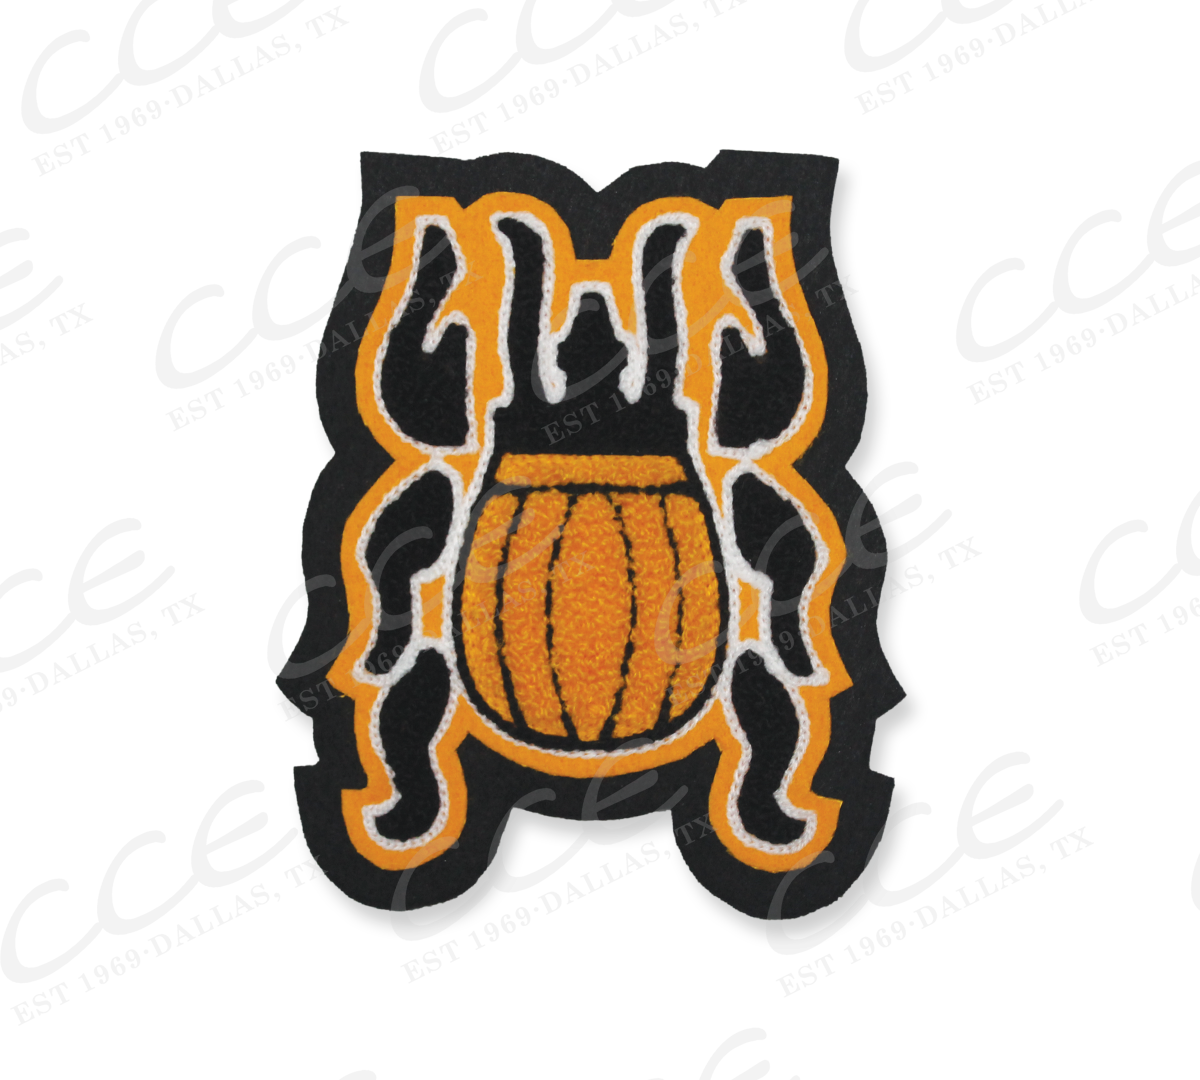 Alva HS (OK) Goldbugs Sleeve Mascot